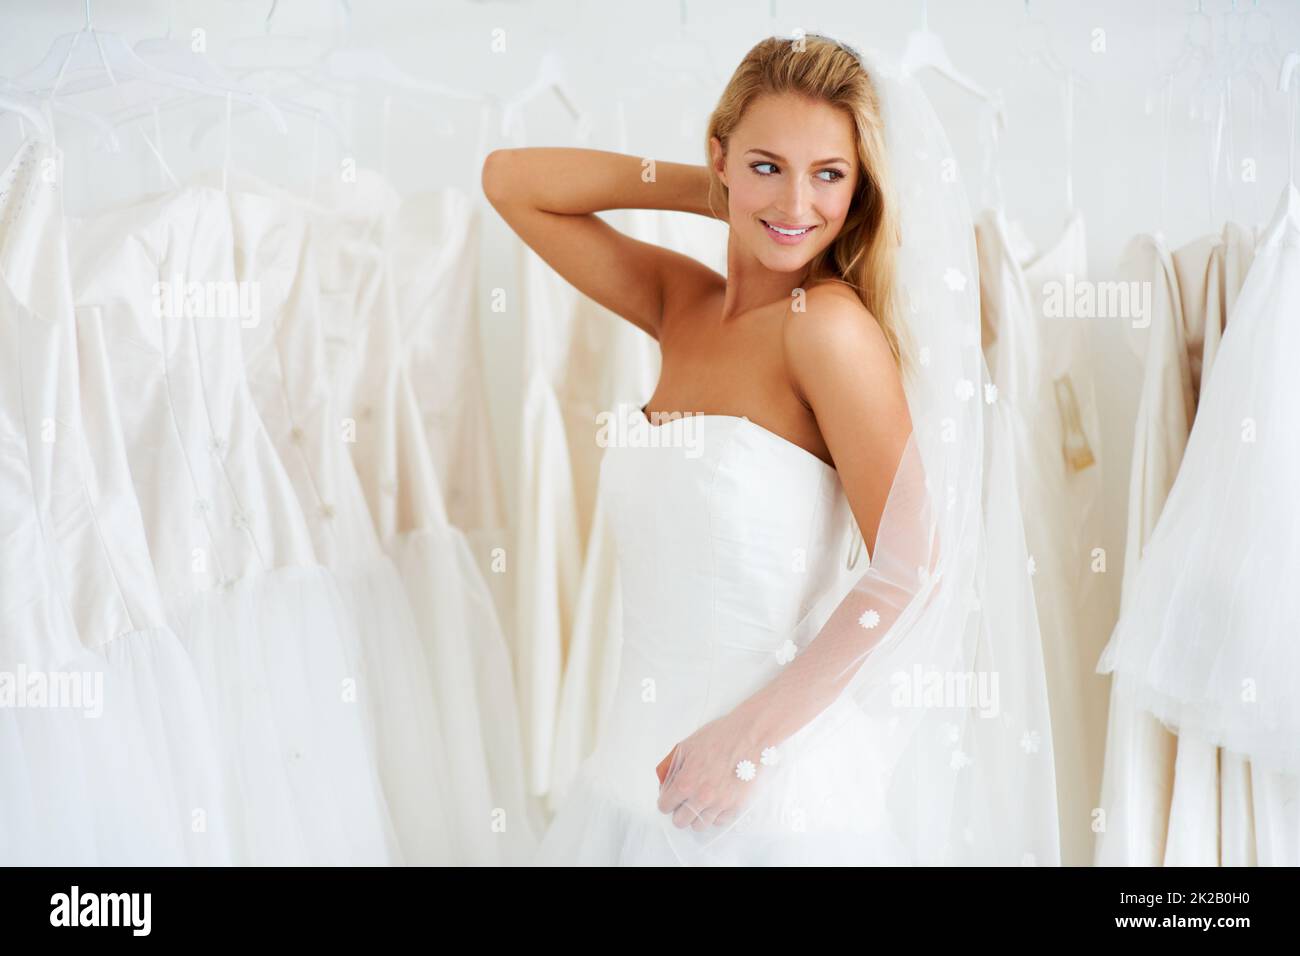 Den perfekten Schleier aussuchen. Eine junge Braut, die ihr Hochzeitskleid anprobiert - Copyspace. Stockfoto